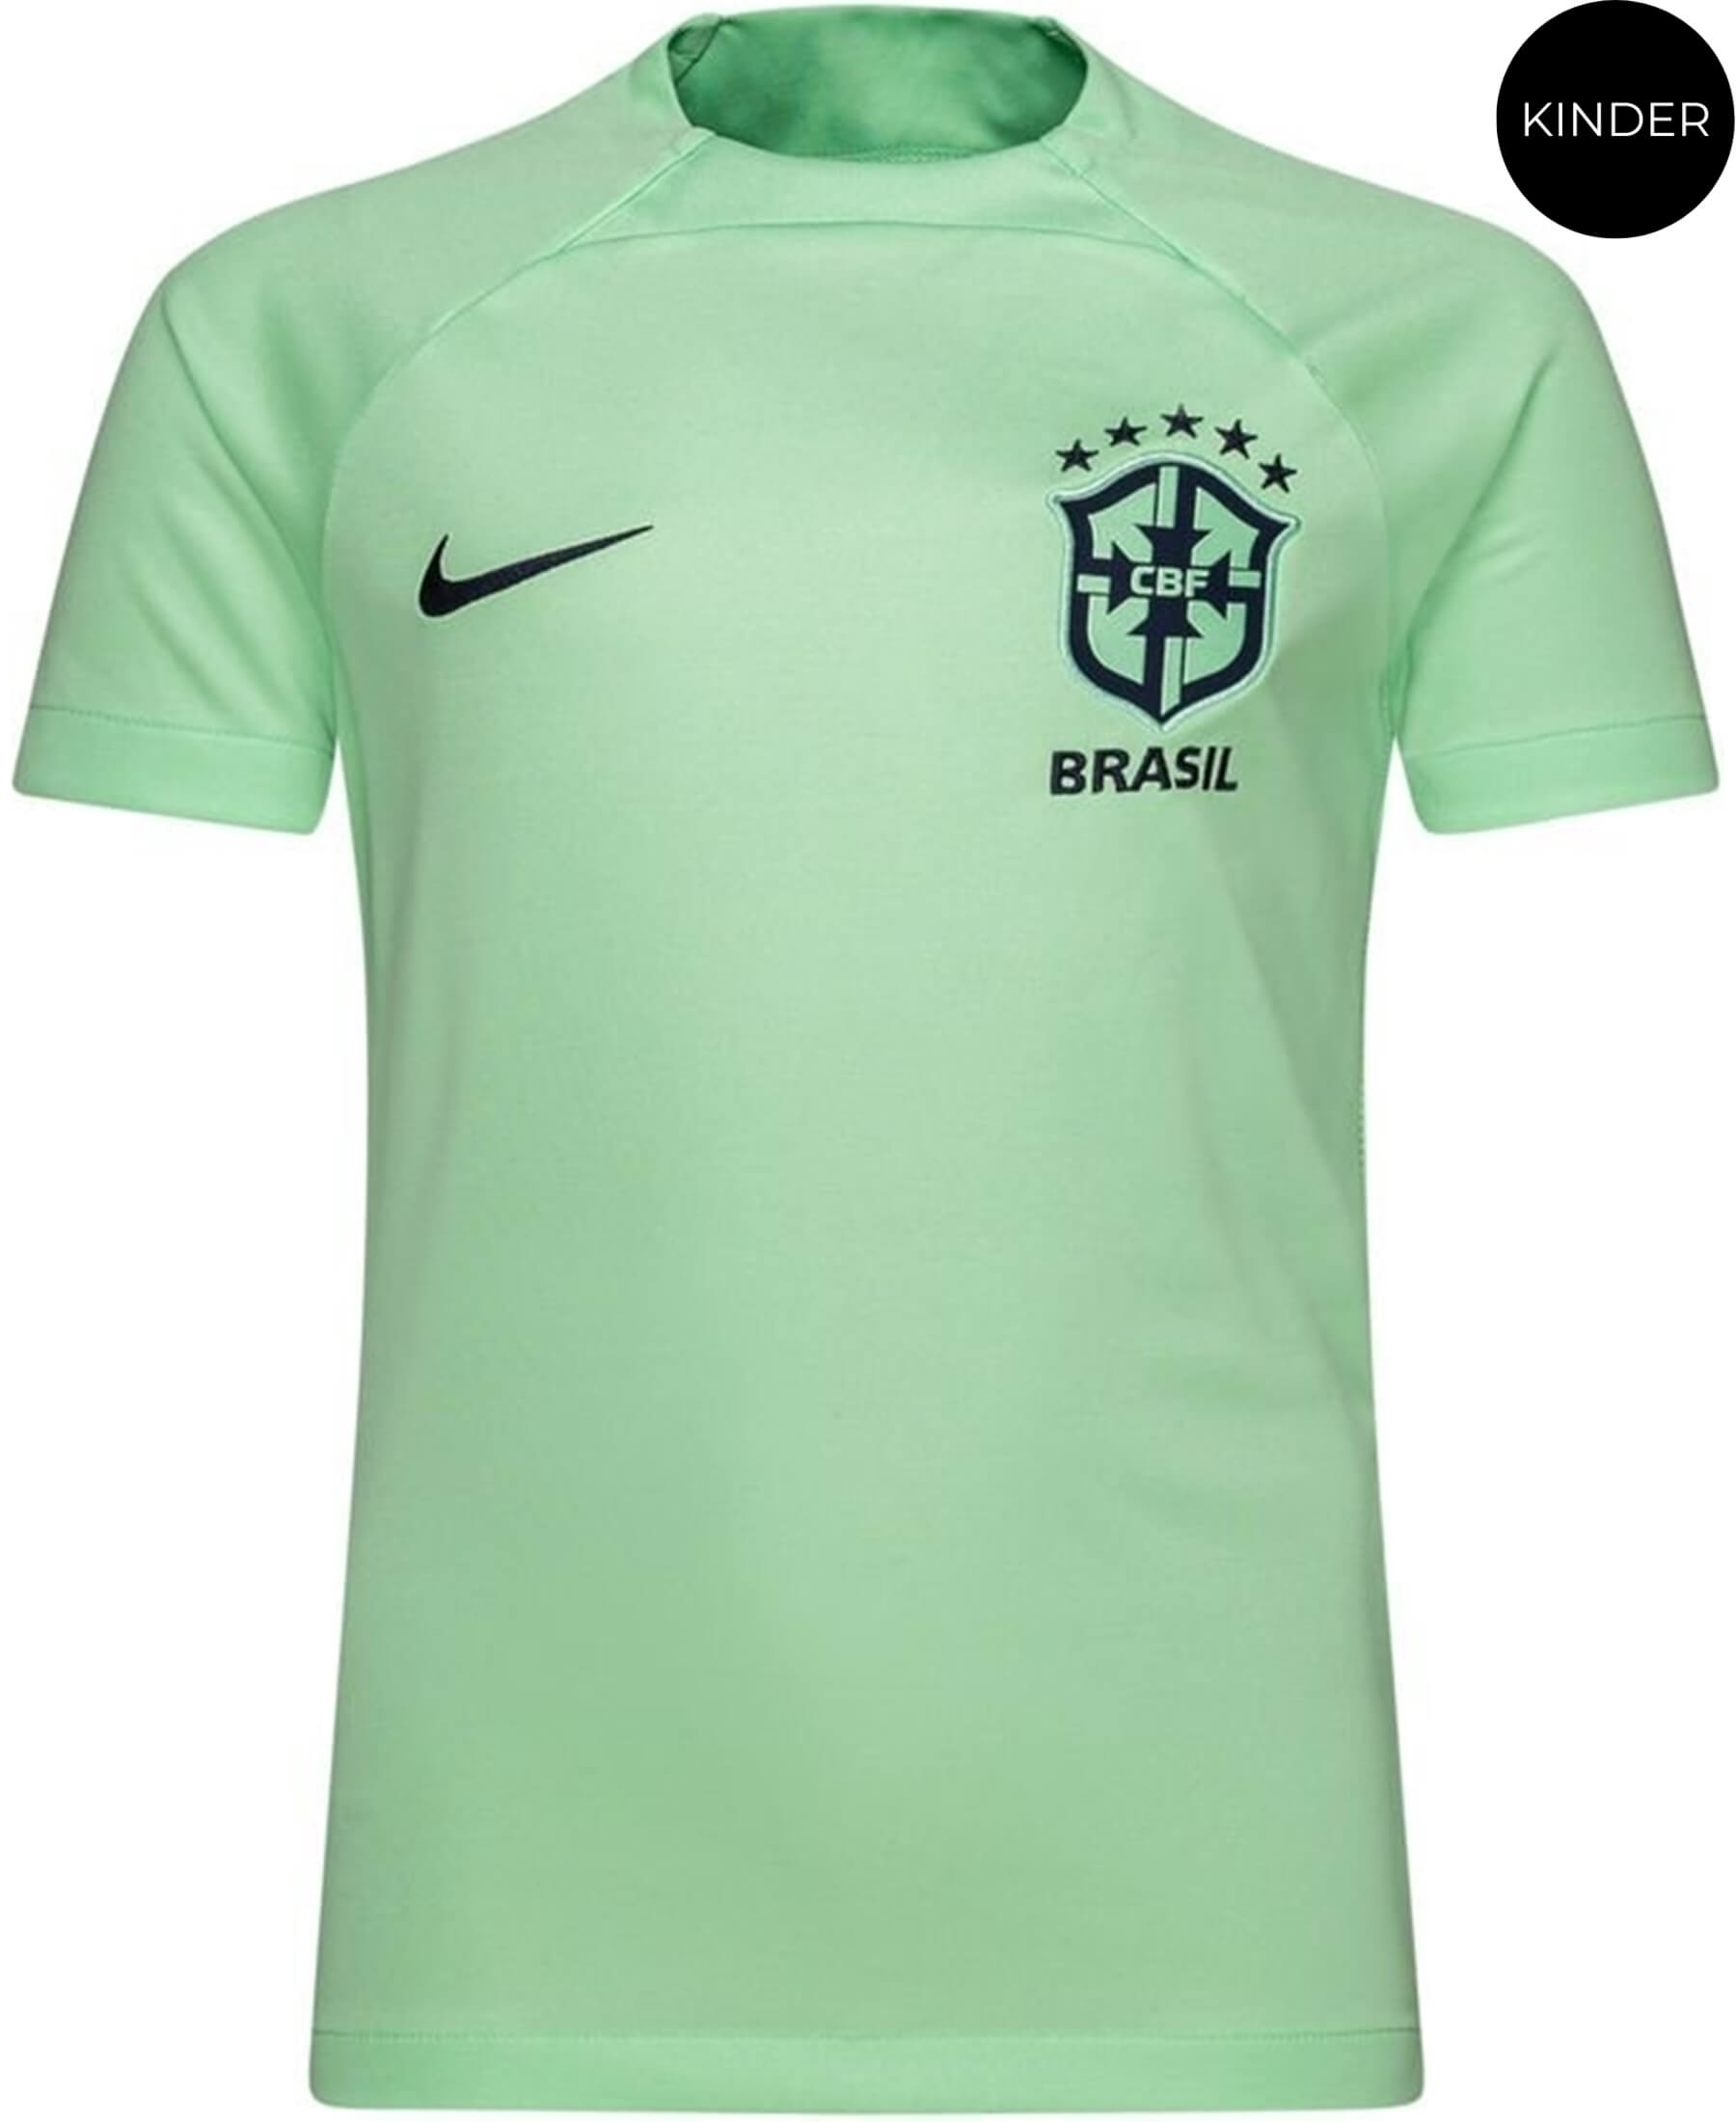 Nike Brasilien CBF Kinder Academy Pro Trainingsshirt 2022/2023 (DM9610-390) im SHOP4TEAMSPORT Onlineshop. Offizielles Shirt der brasilianischen Nationalmannschaft. Hoher Tragekomfort, modernes Design, atmungsaktiv. Perfekt für Training und Fans. Jetzt bei SHOP4TEAMSPORT erhältlich.